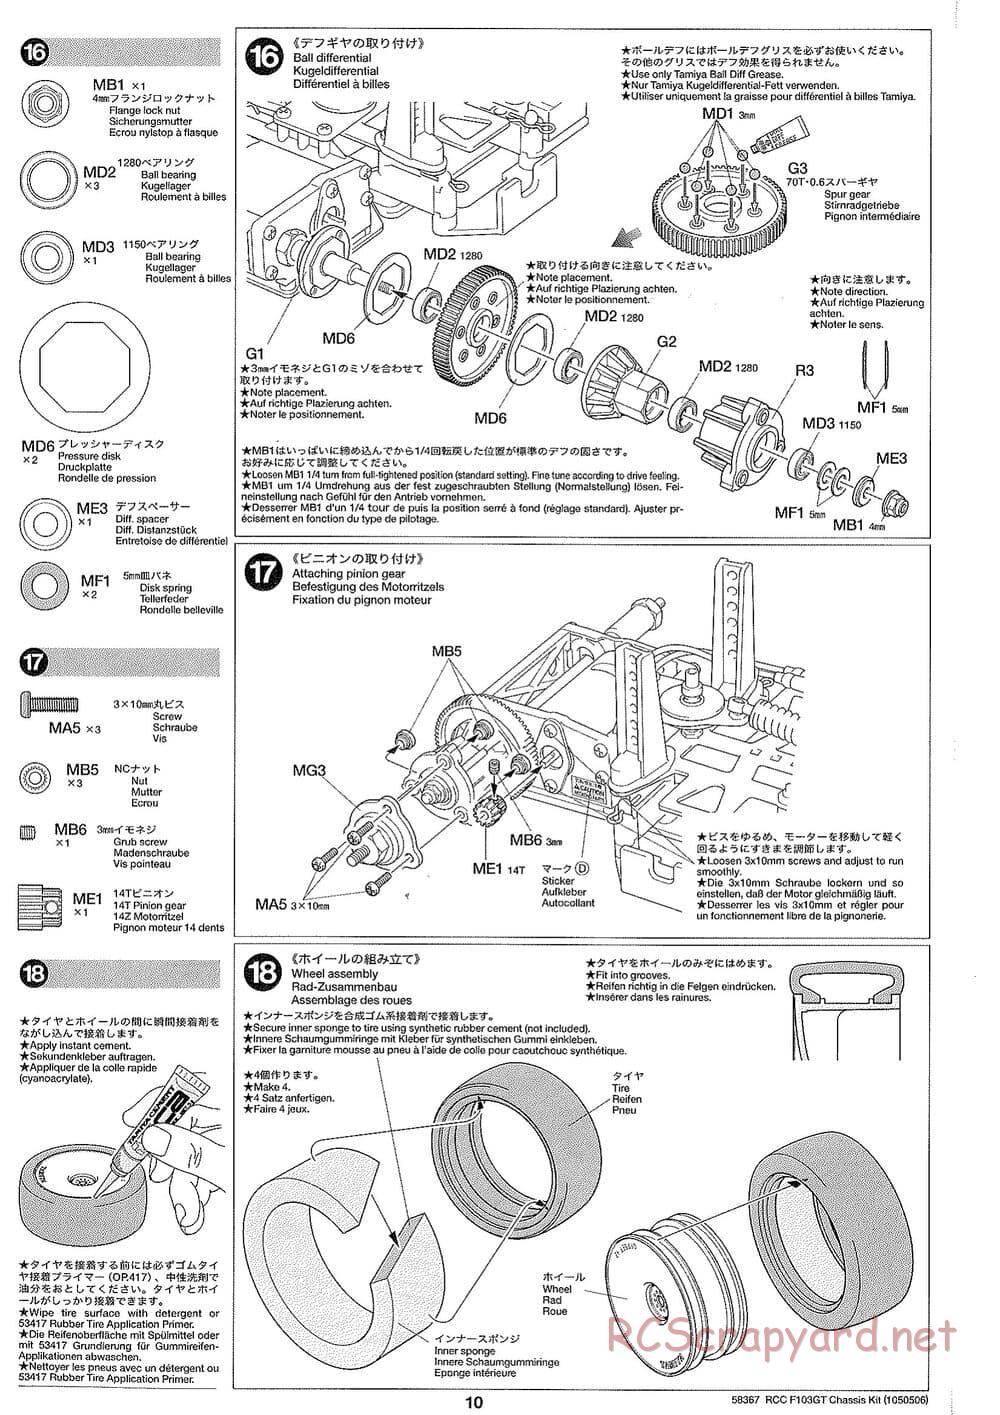 Tamiya - F103GT Chassis Kit - Manual - Page 10